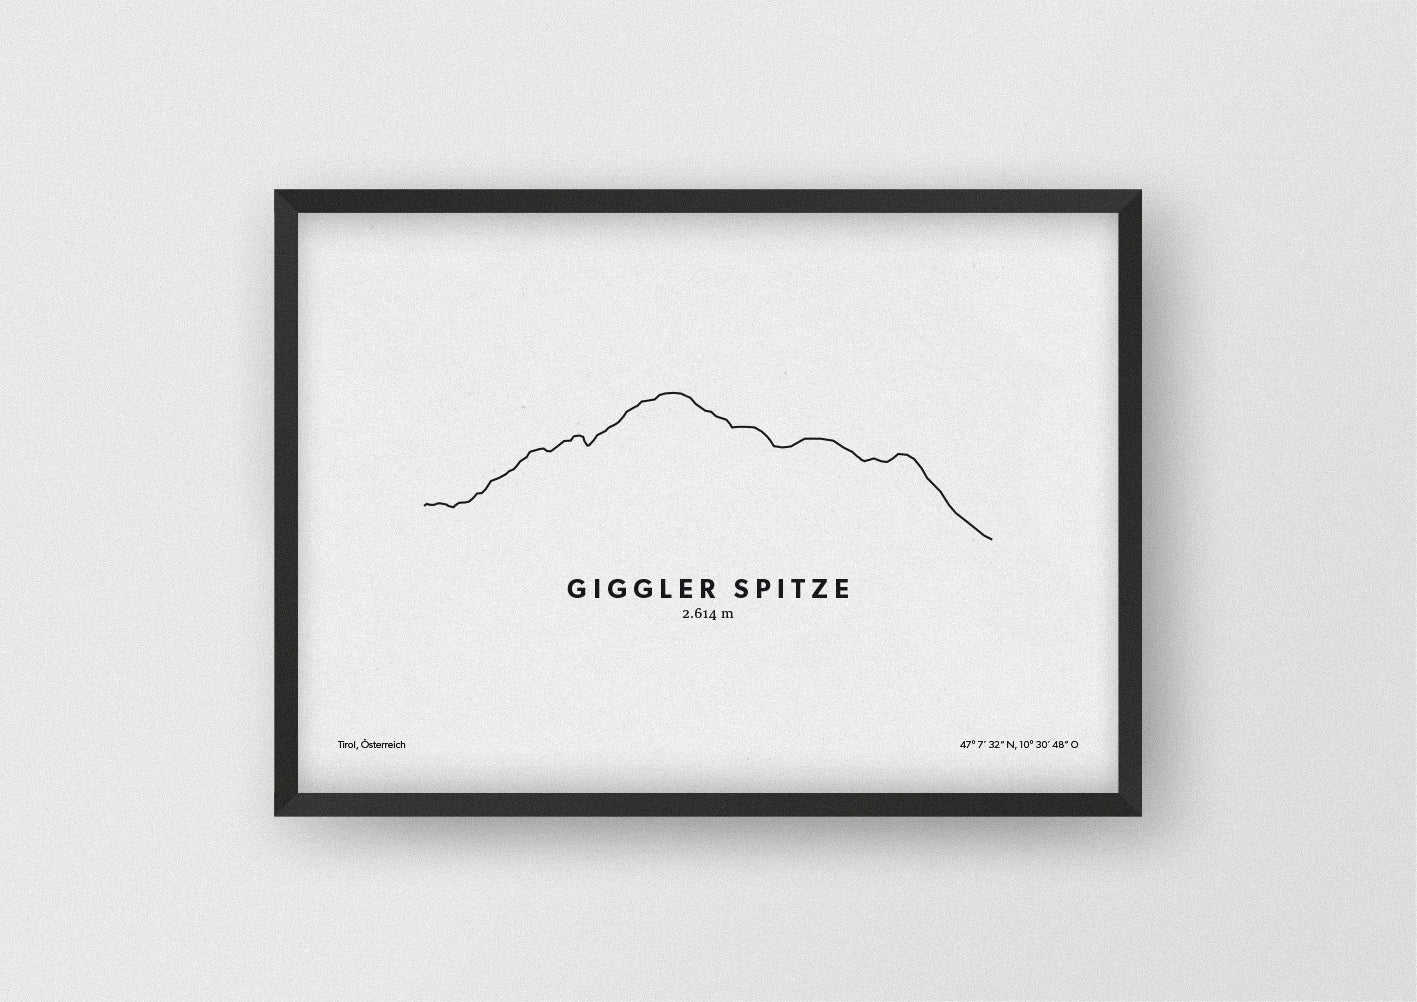 Minimalistische Illustration der Giggler Spitze in der Region Landeck in Tirol, als stilvoller Einrichtungsgegenstand für Zuhause.